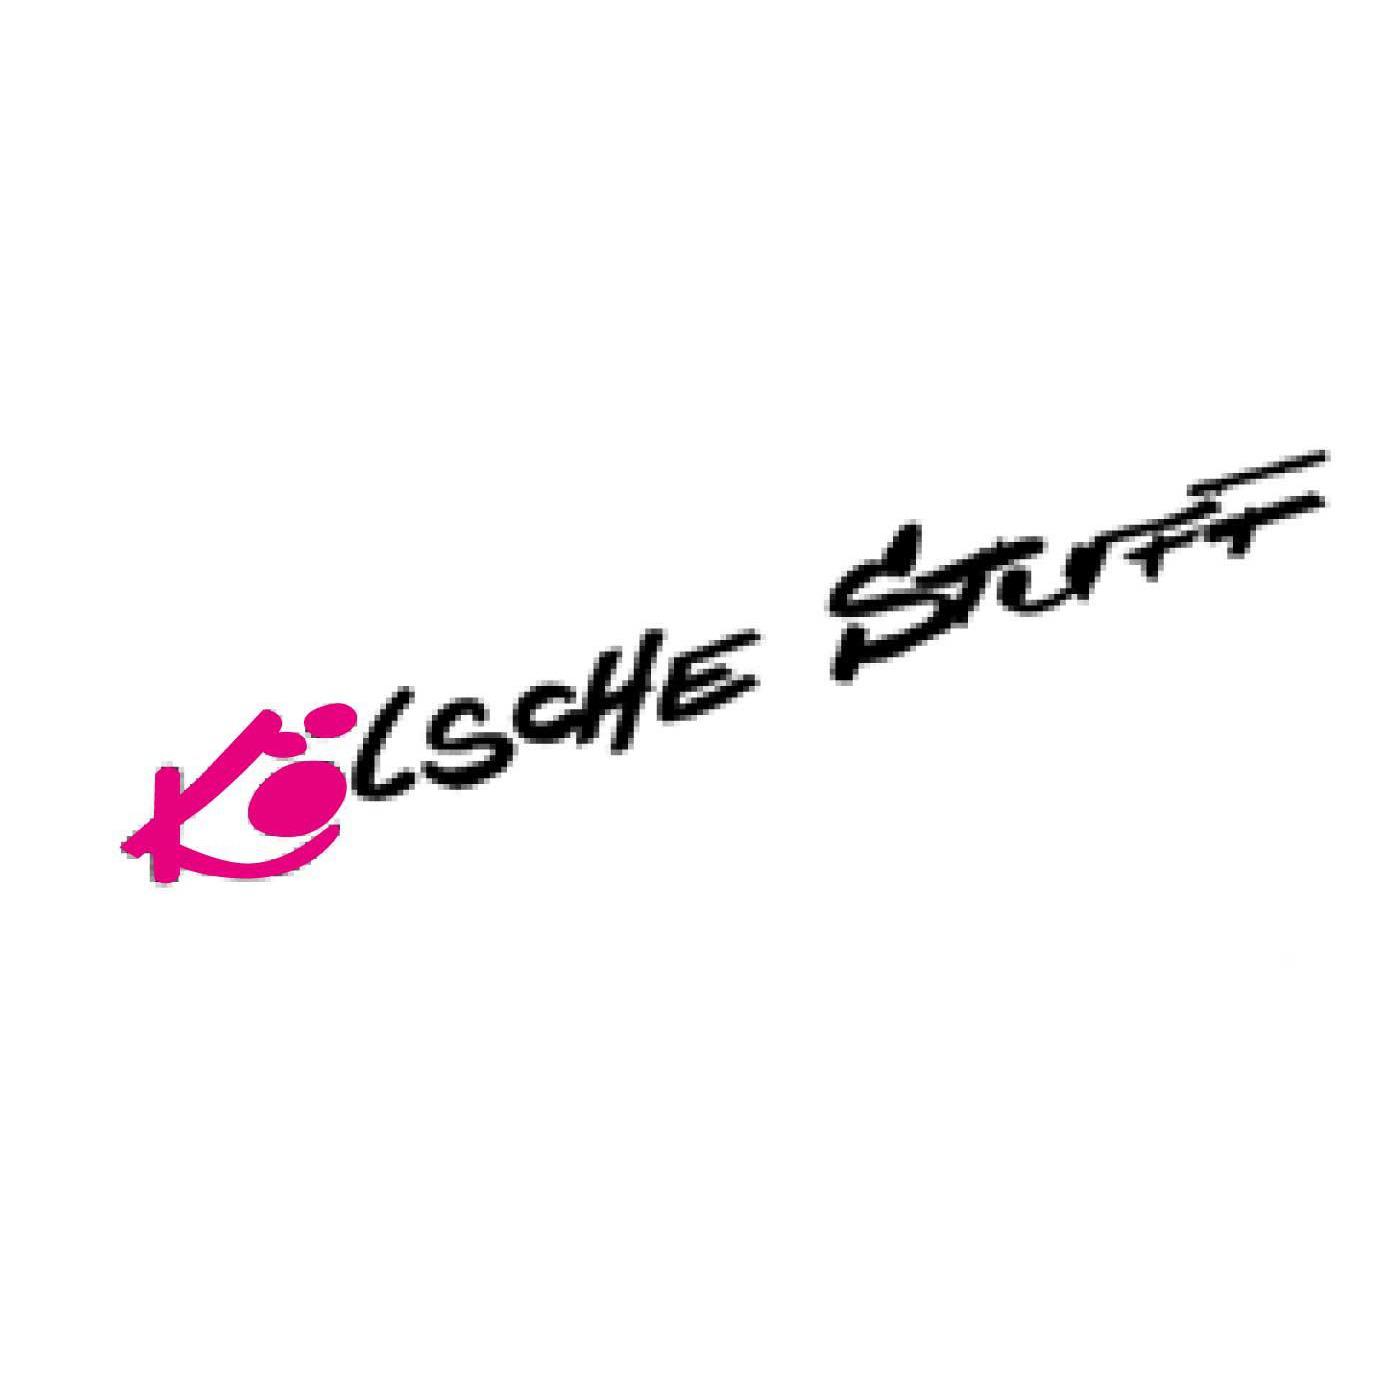 Bier- und Weinstube "Kölsche Stuff" in Köln - Logo